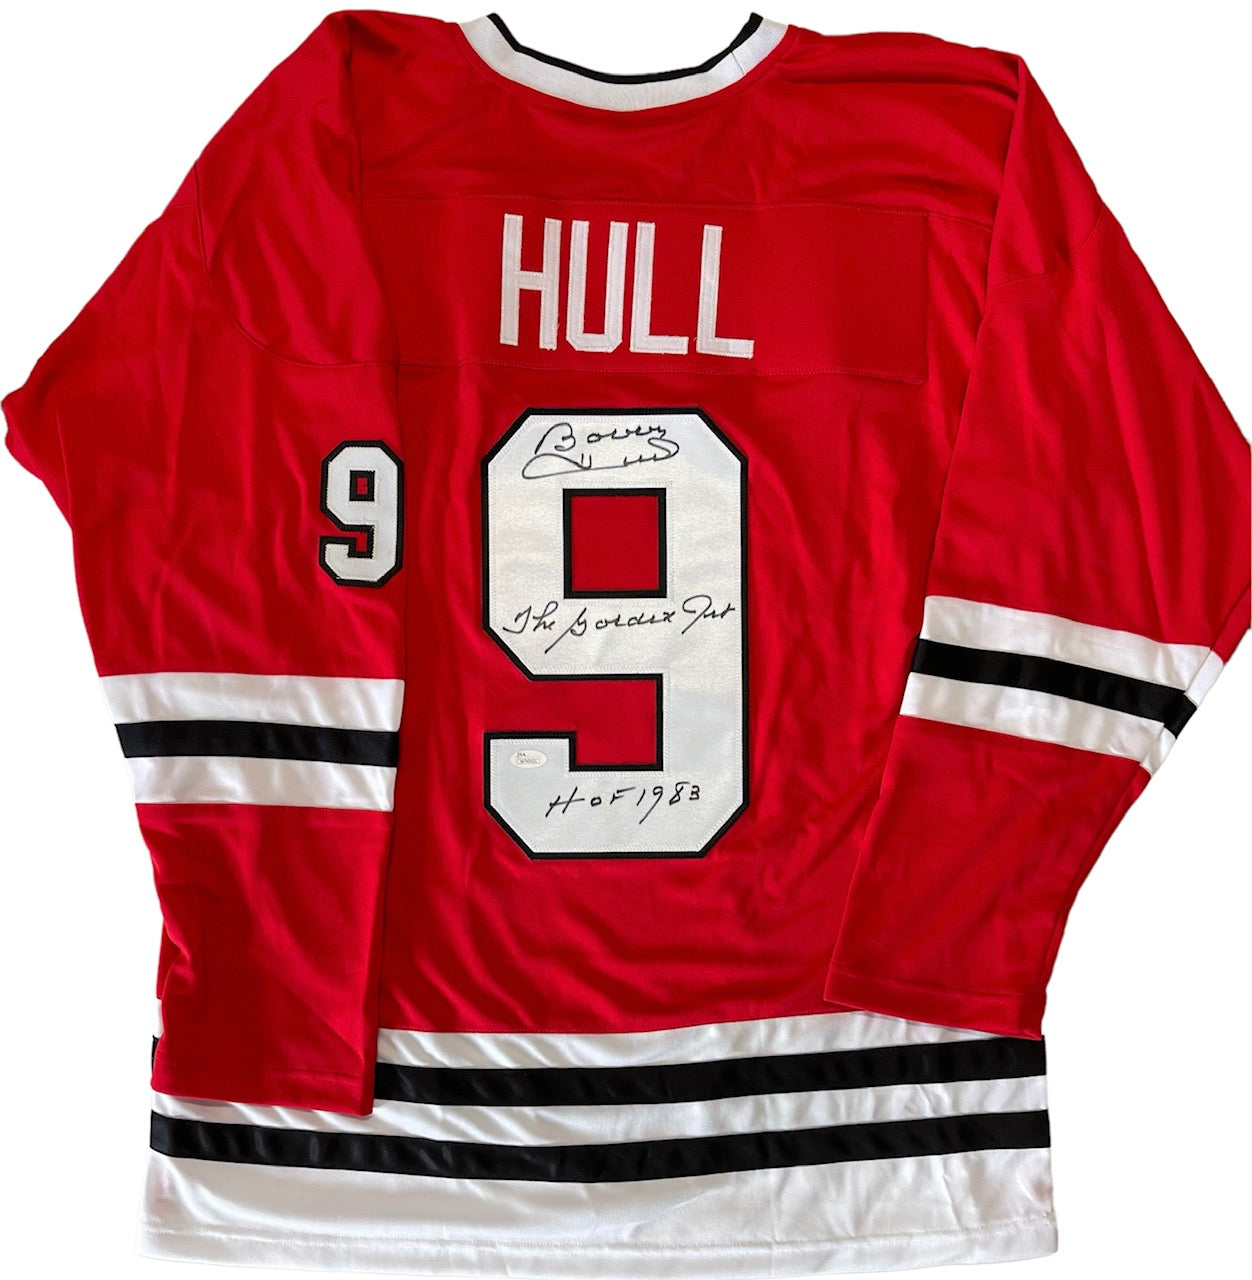 Bobby Hull Signed Custom 35x43 Framed Chicago Blackhawks Jersey